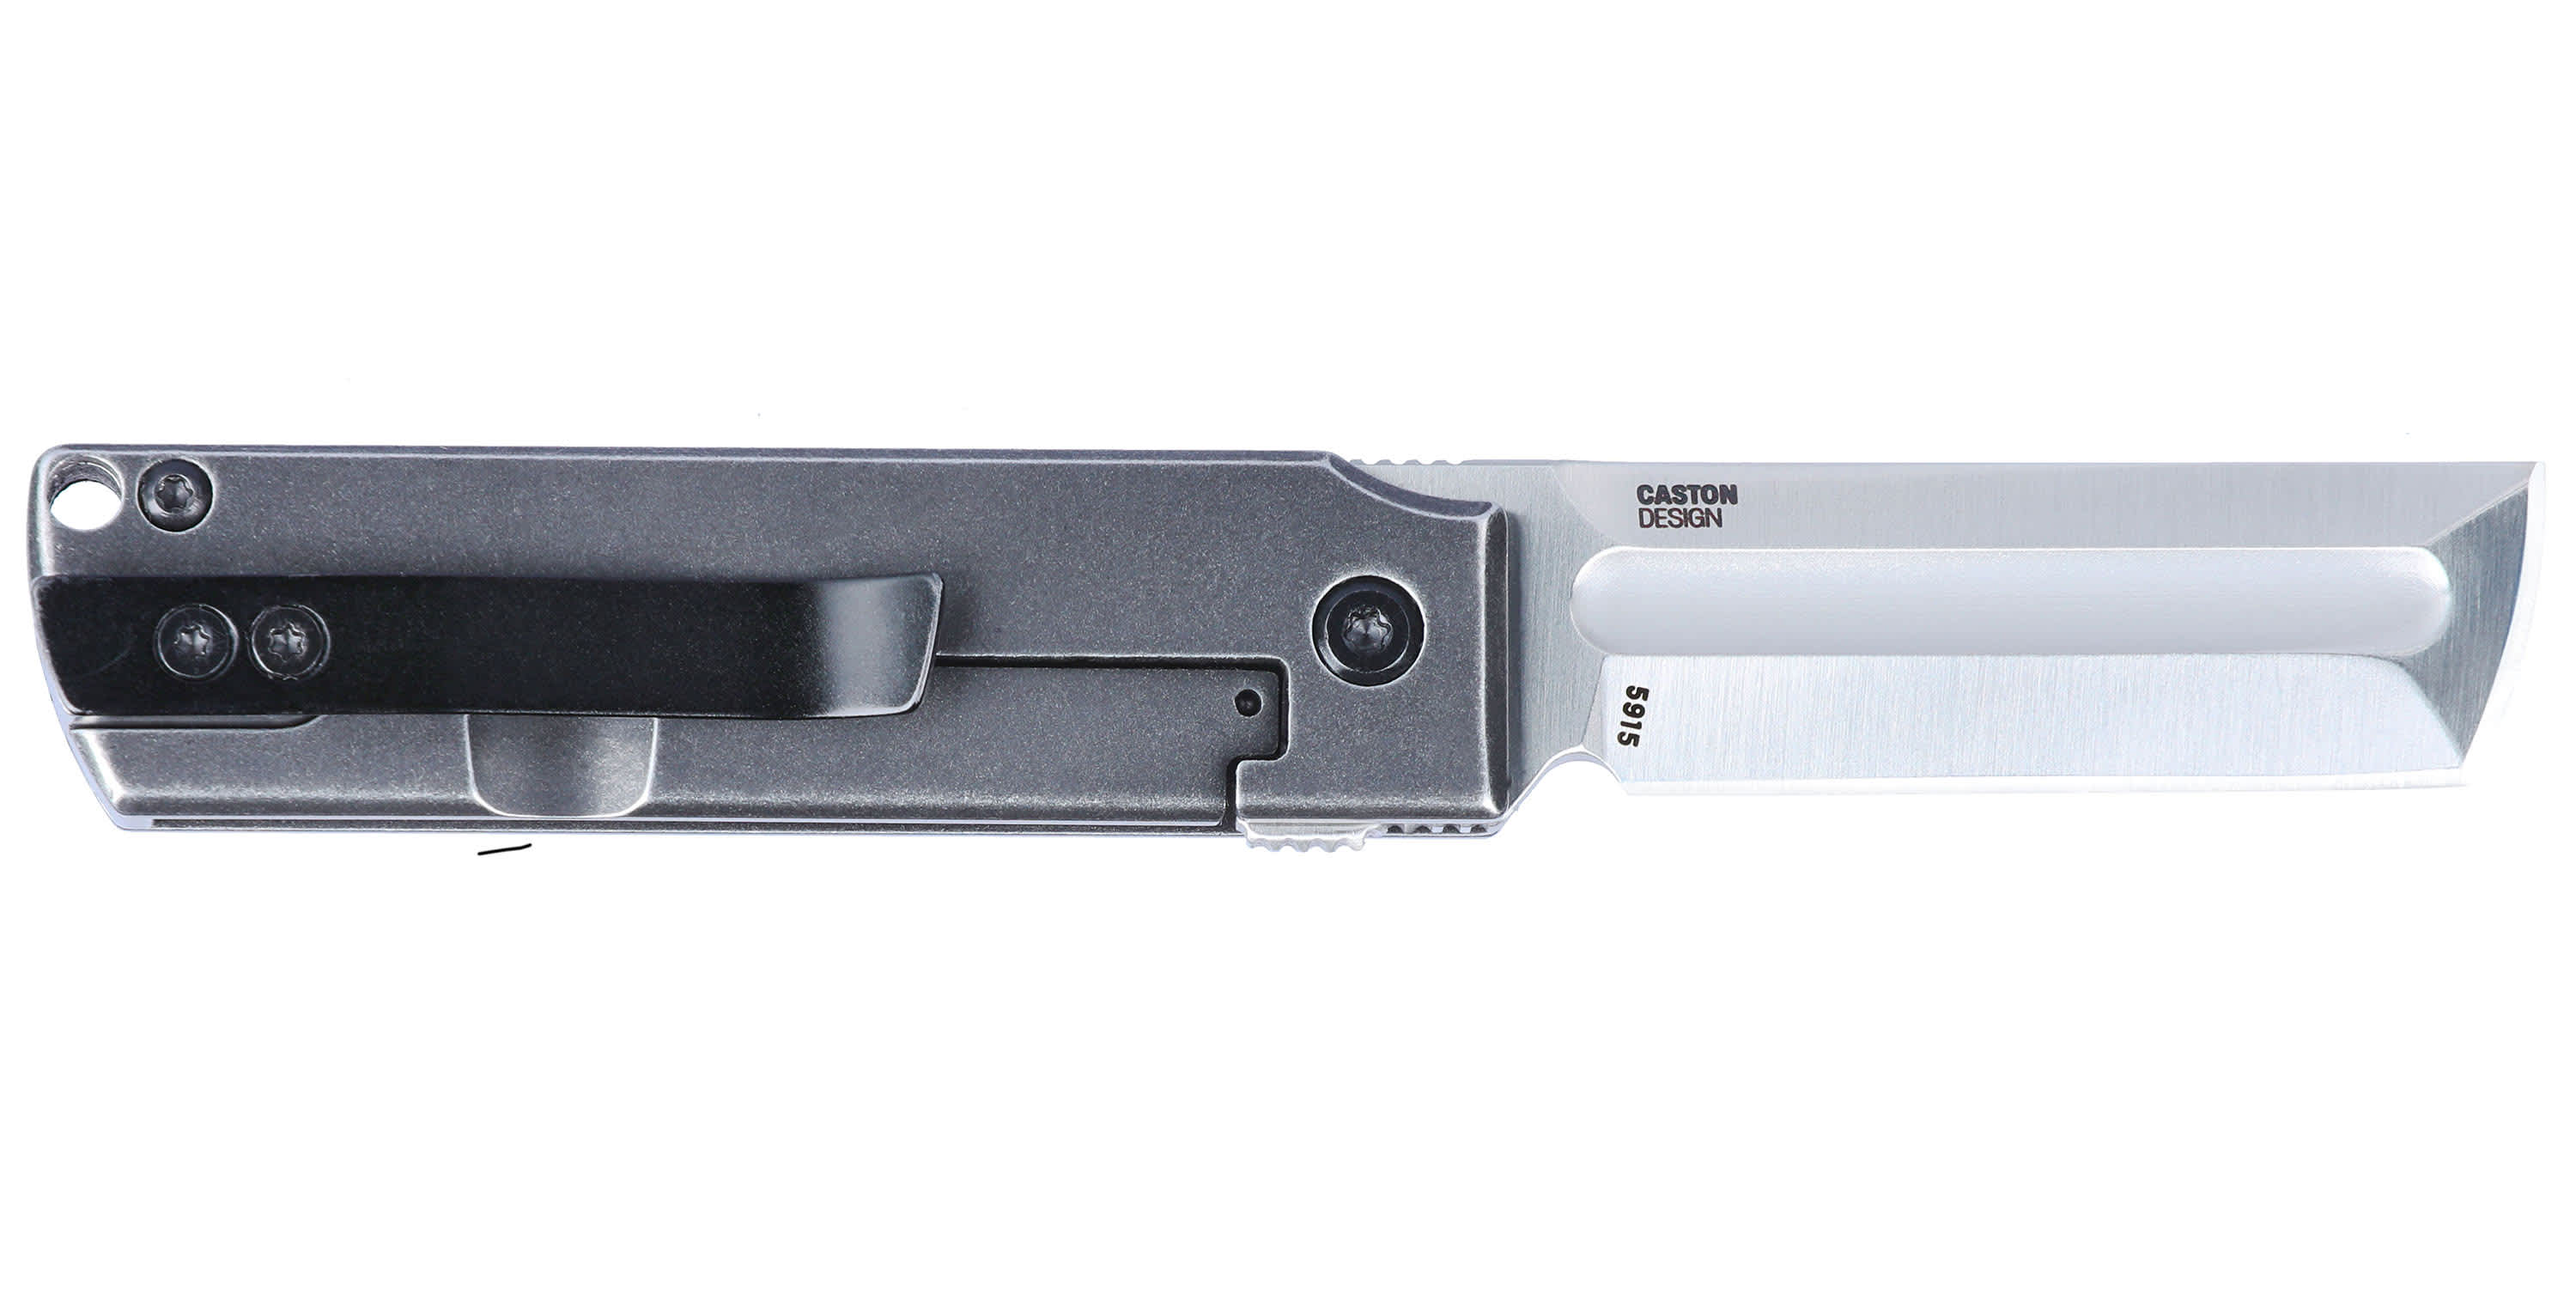 CRKT® MinimalX Folding Knife